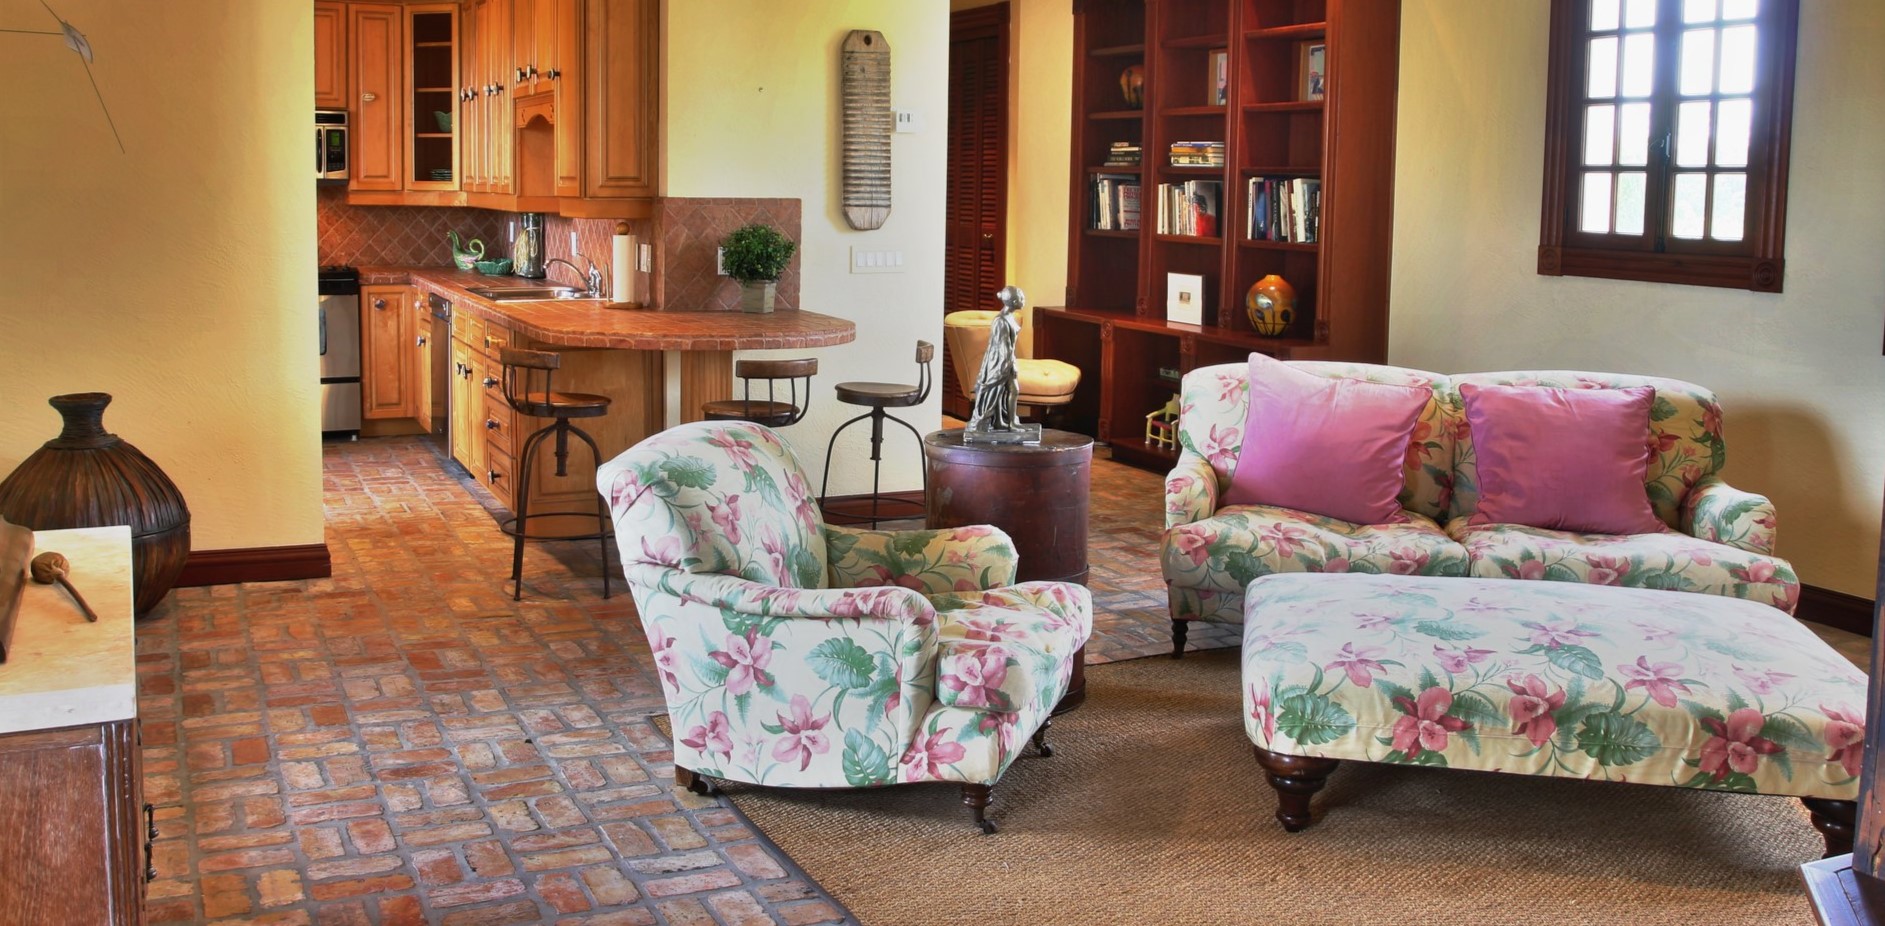 Обивка мягкой мебели с цветочным рисунком идеально подойдет для гостиной в стиле прованс